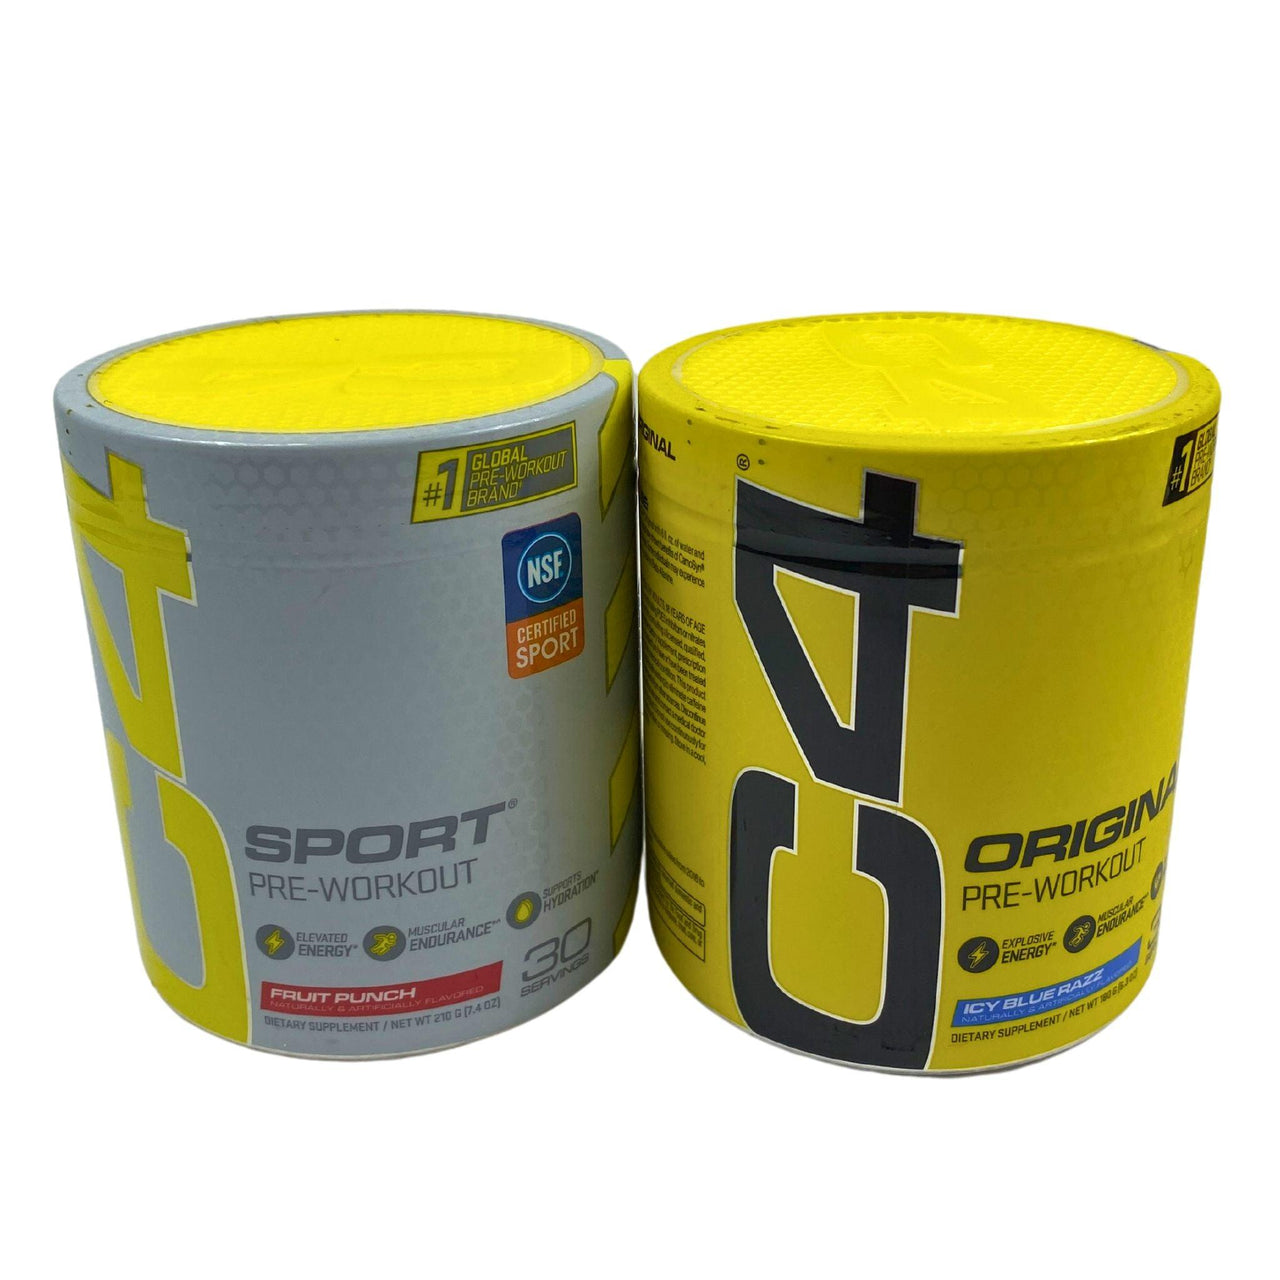 C4 Sport Pre-Workout Fruit Punch 7.4oz and Original Explosive Pre-Workout 6.3oz (24 Pcs Lot) - Discount Wholesalers Inc